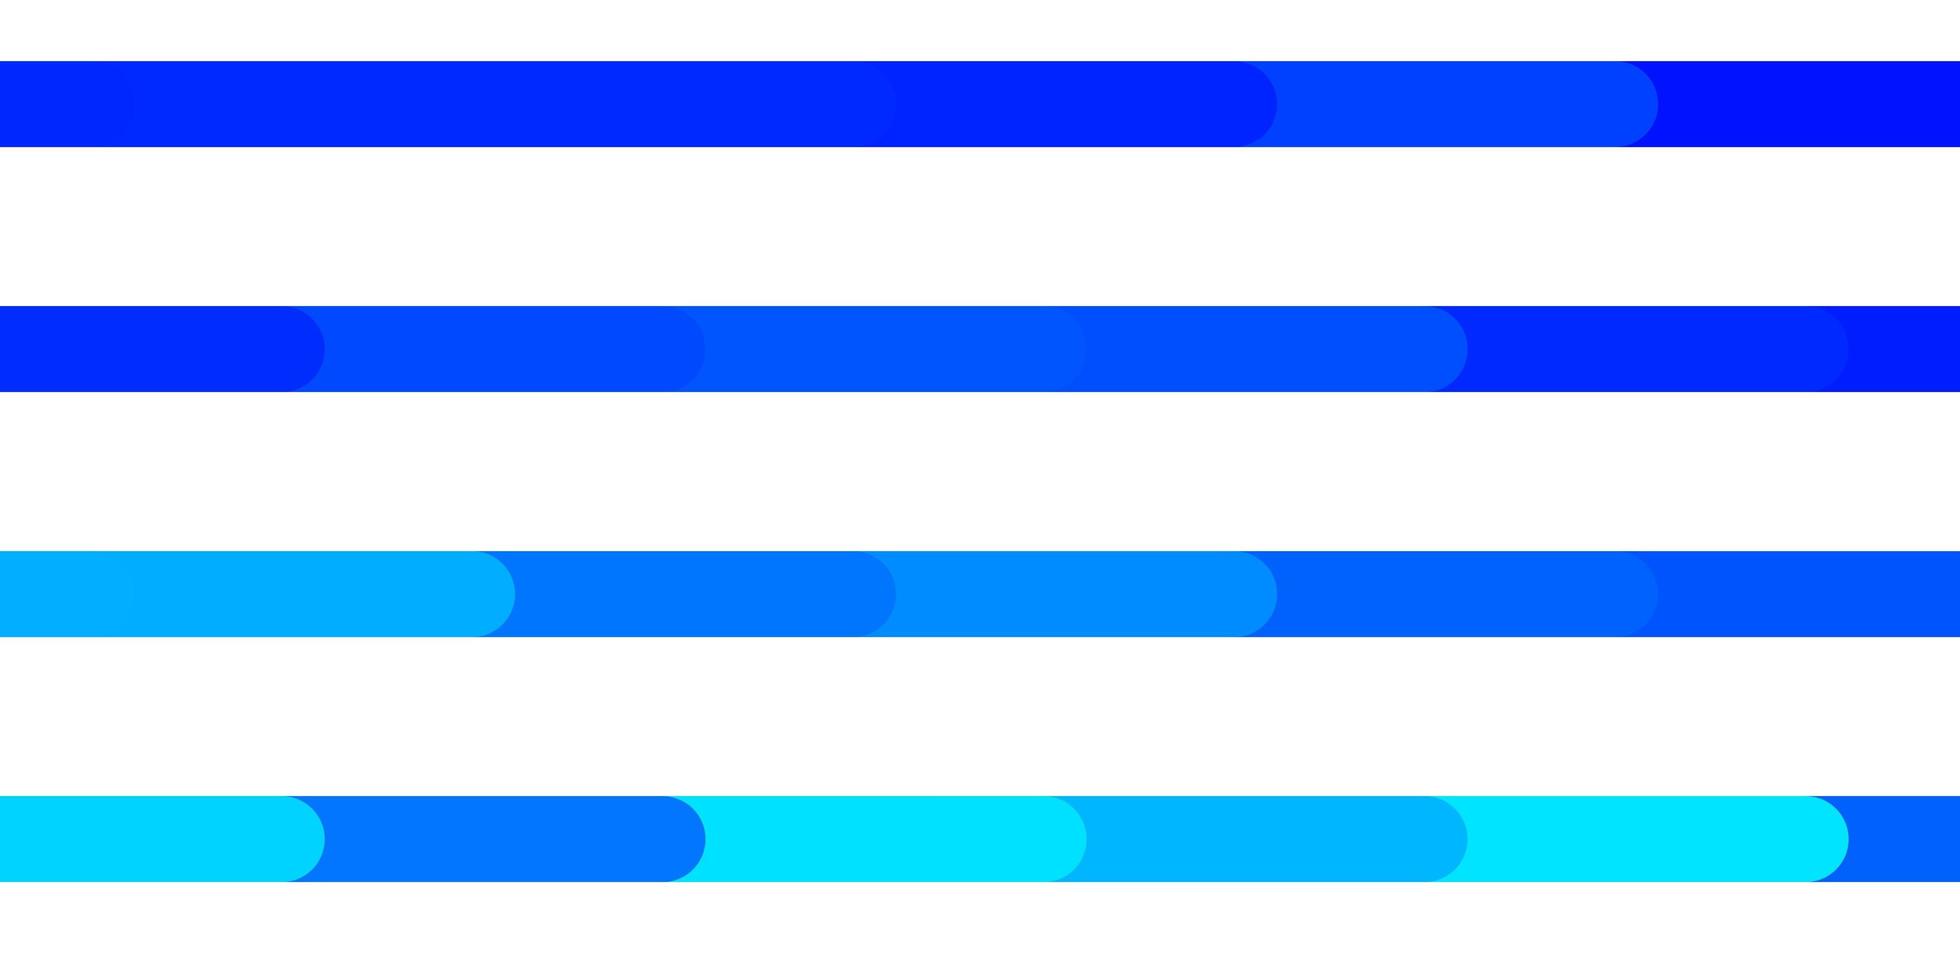 lichtblauwe vectorachtergrond met lijnen. kleurrijke gradiëntillustratie met abstracte vlakke lijnen. patroon voor websites, bestemmingspagina's. vector